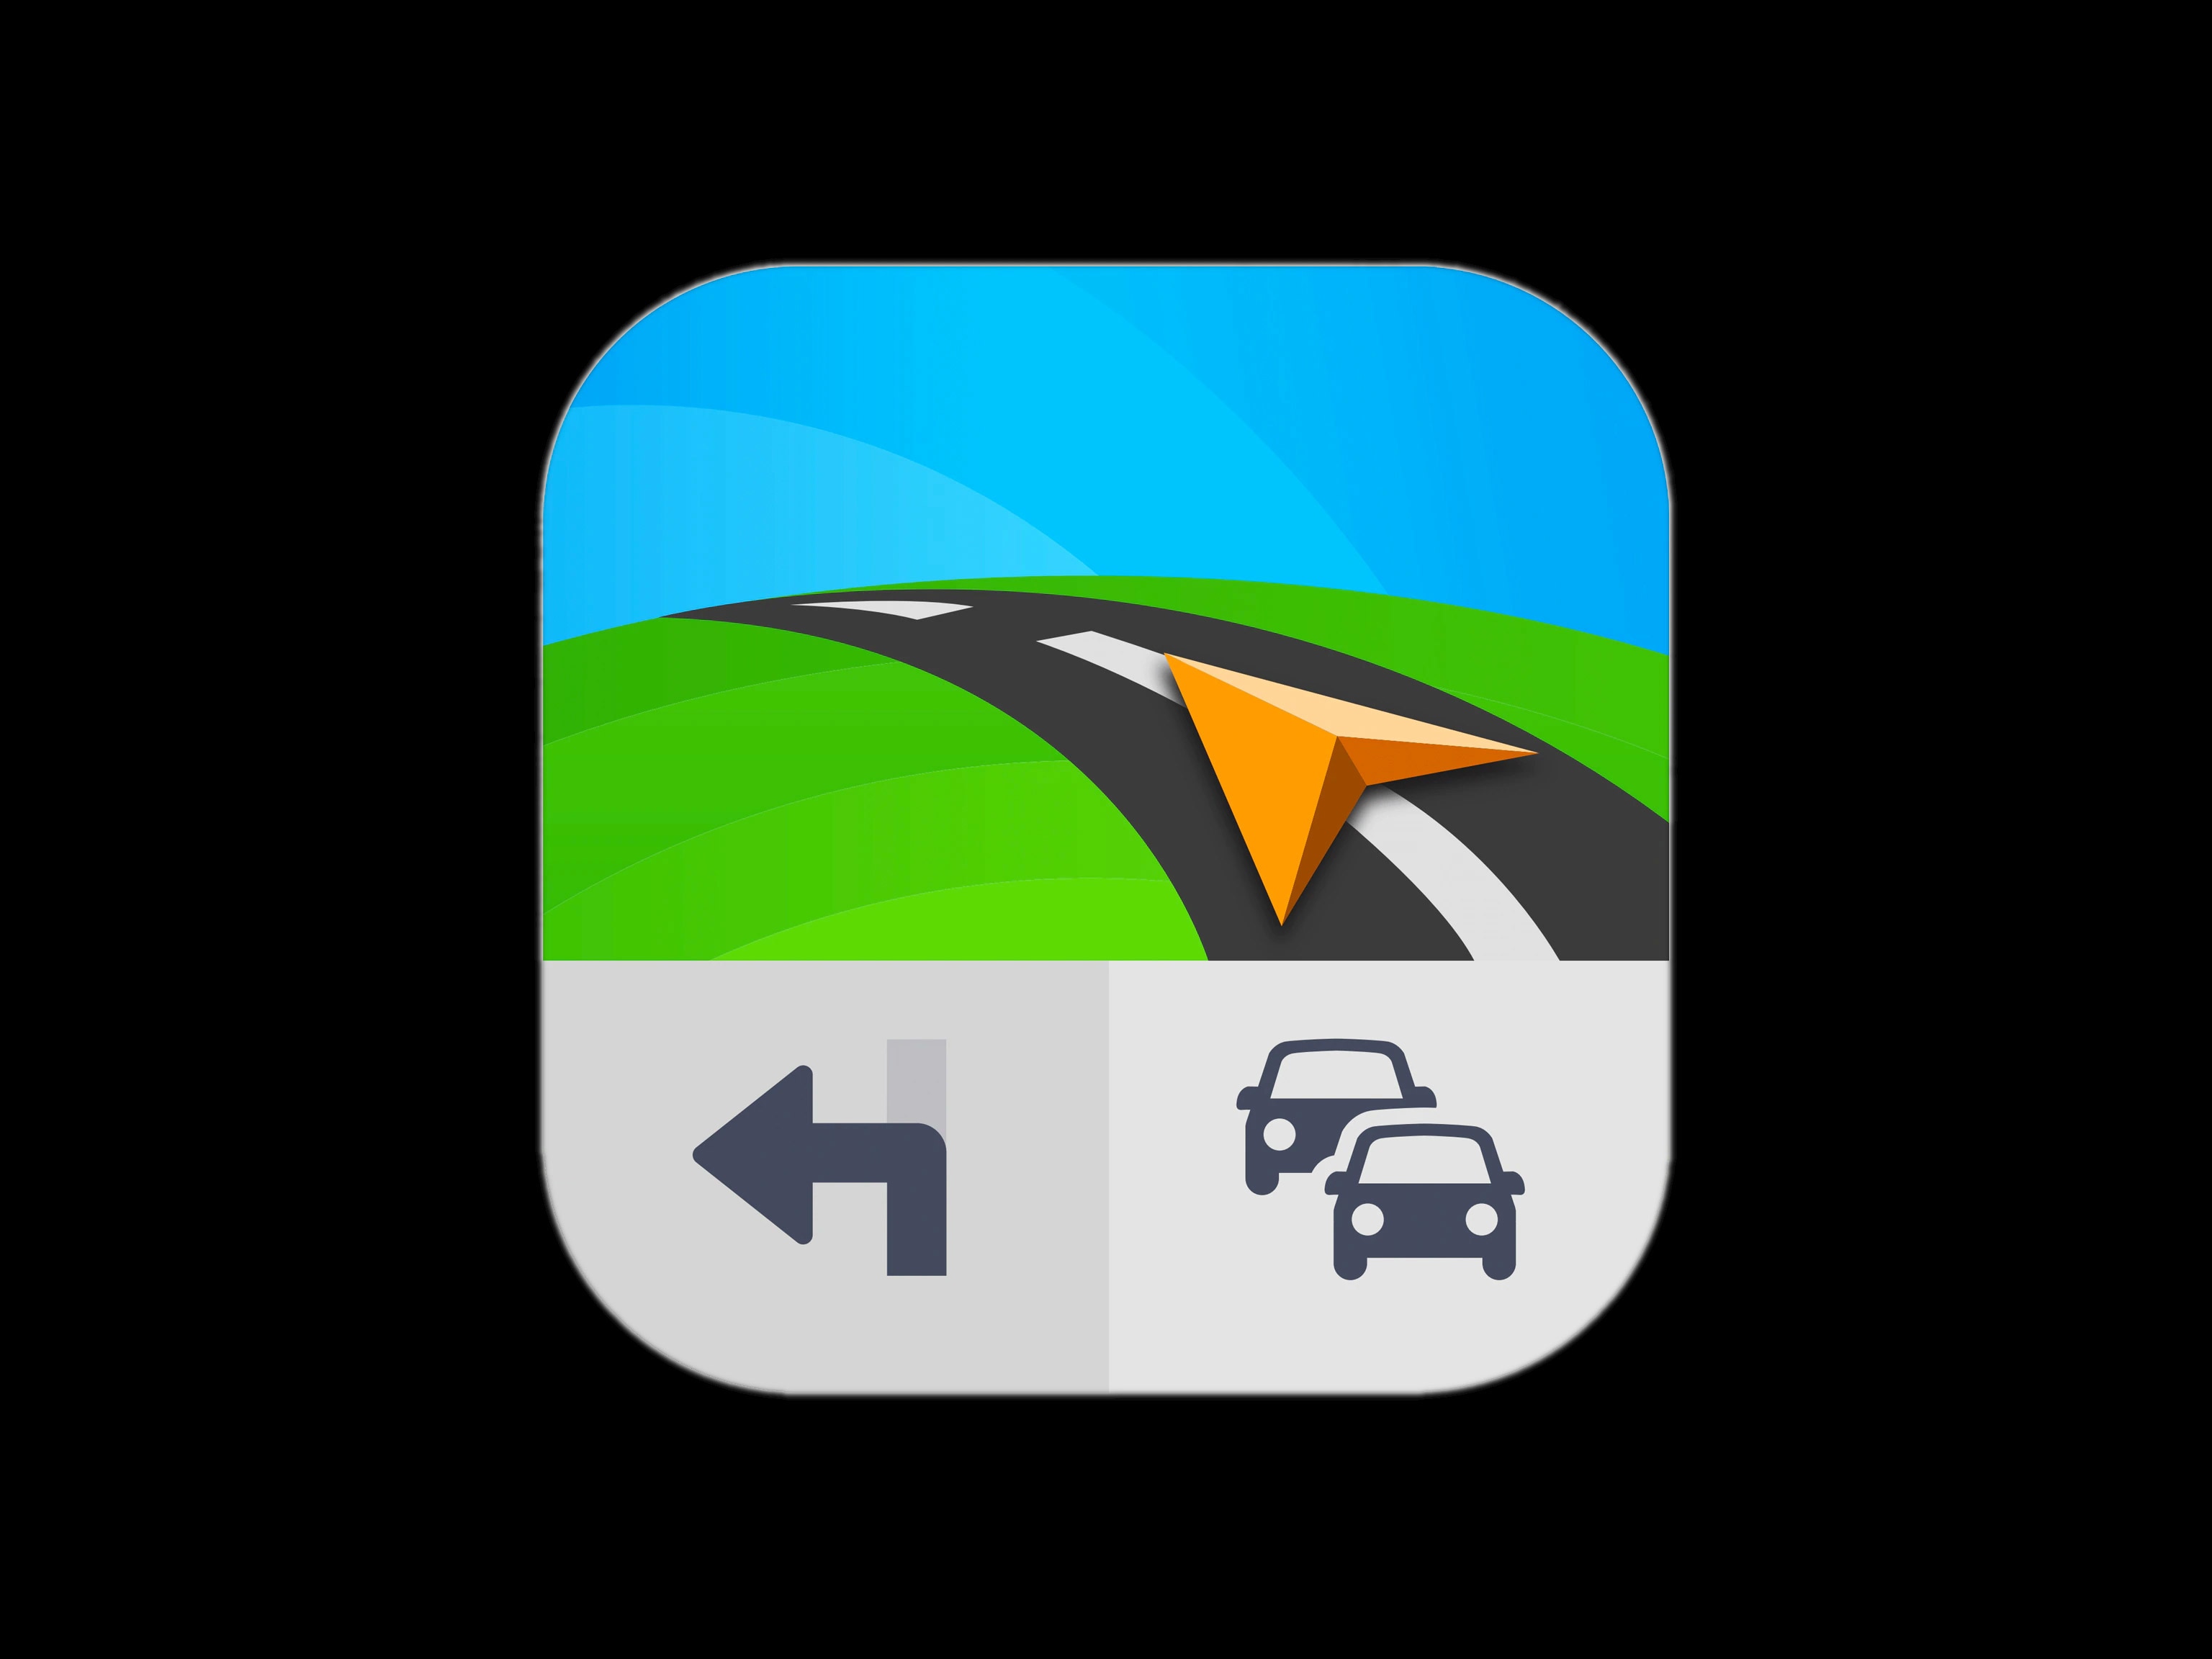 Het logo van de Sygic Car Navigation-app